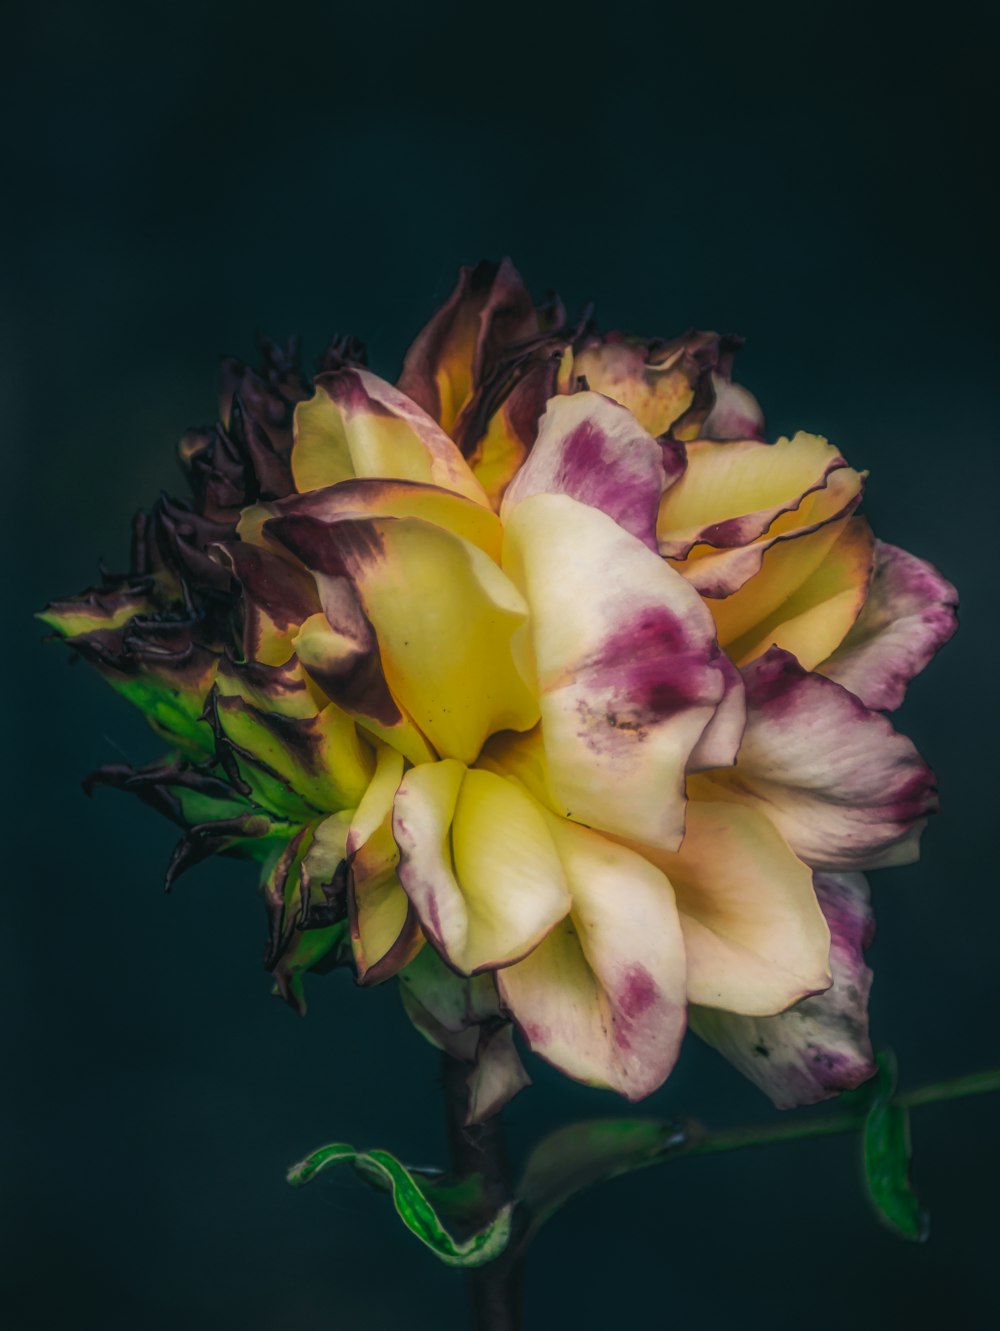 flor amarela e roxa na fotografia de perto